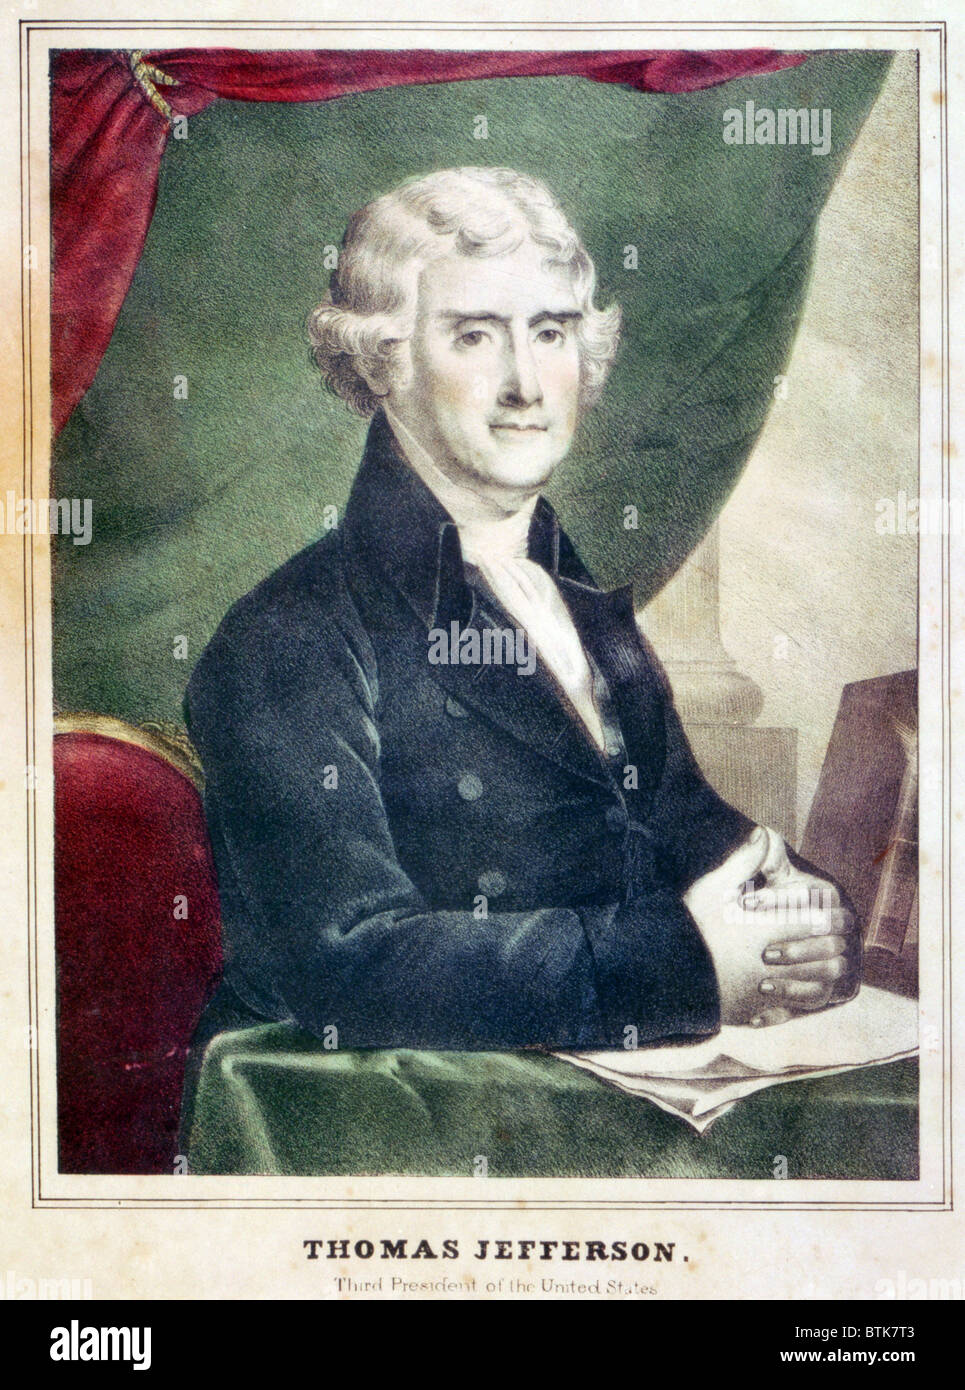 Thomas Jefferson, troisième Président des États-Unis. Lithographie couleur, copie d'un tableau par Gilbert Stuart. ca. 1805 Banque D'Images